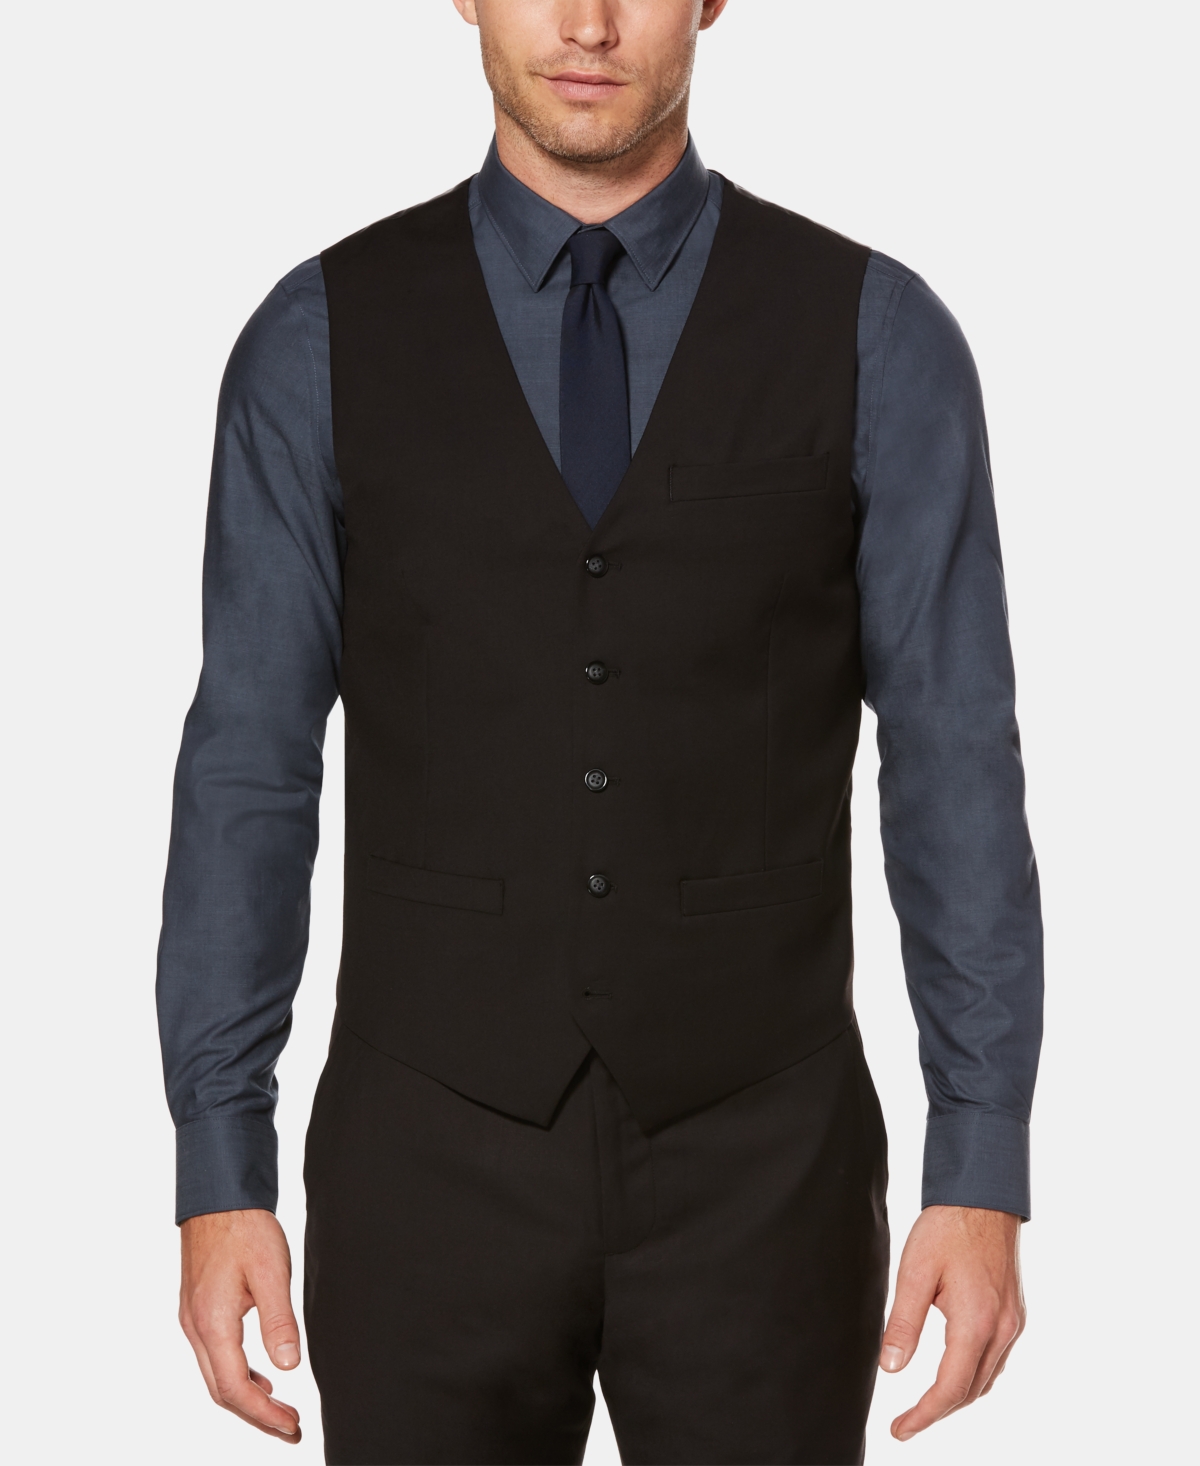 Men's Solid Vest - Black